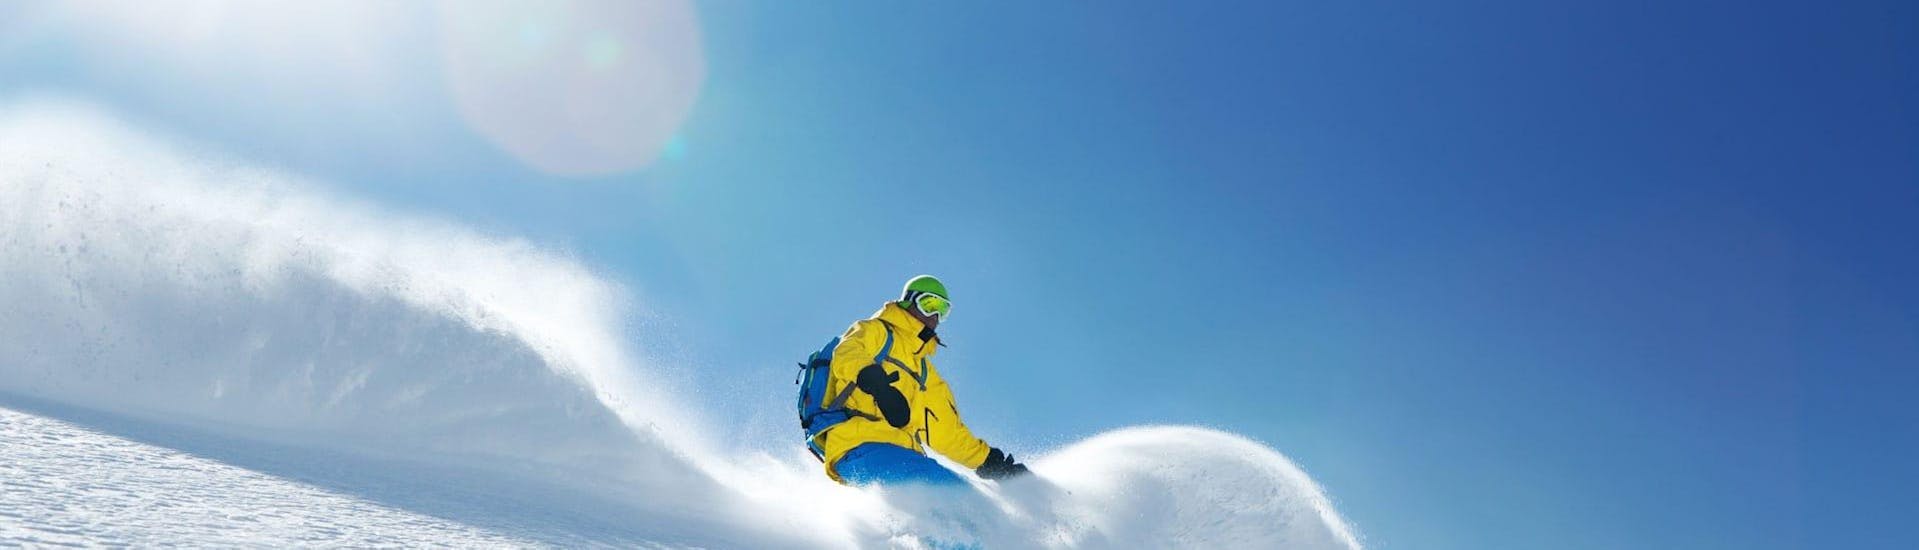 Privater Snowboardkurs für Kinder & Erwachsene in Großarl mit Skischule Toni Gruber.